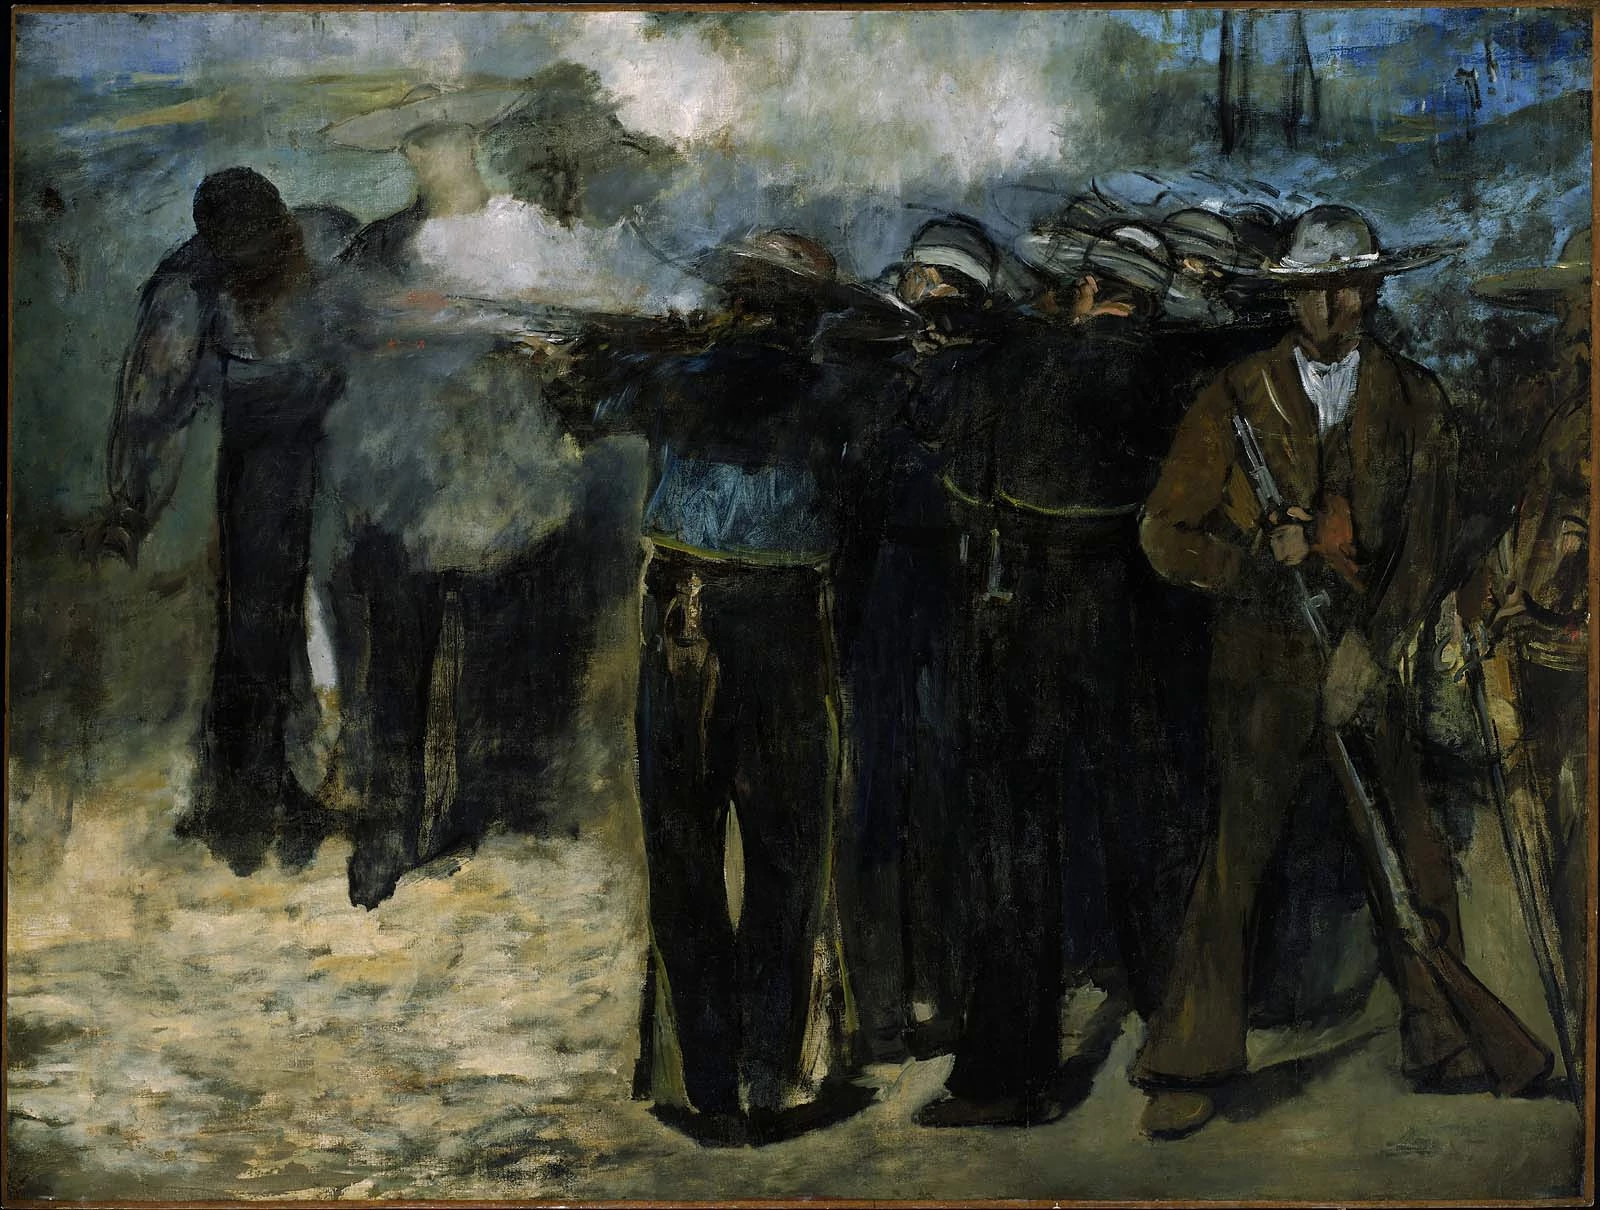 The Execution of Emperor Maximilian, Édouard Manet